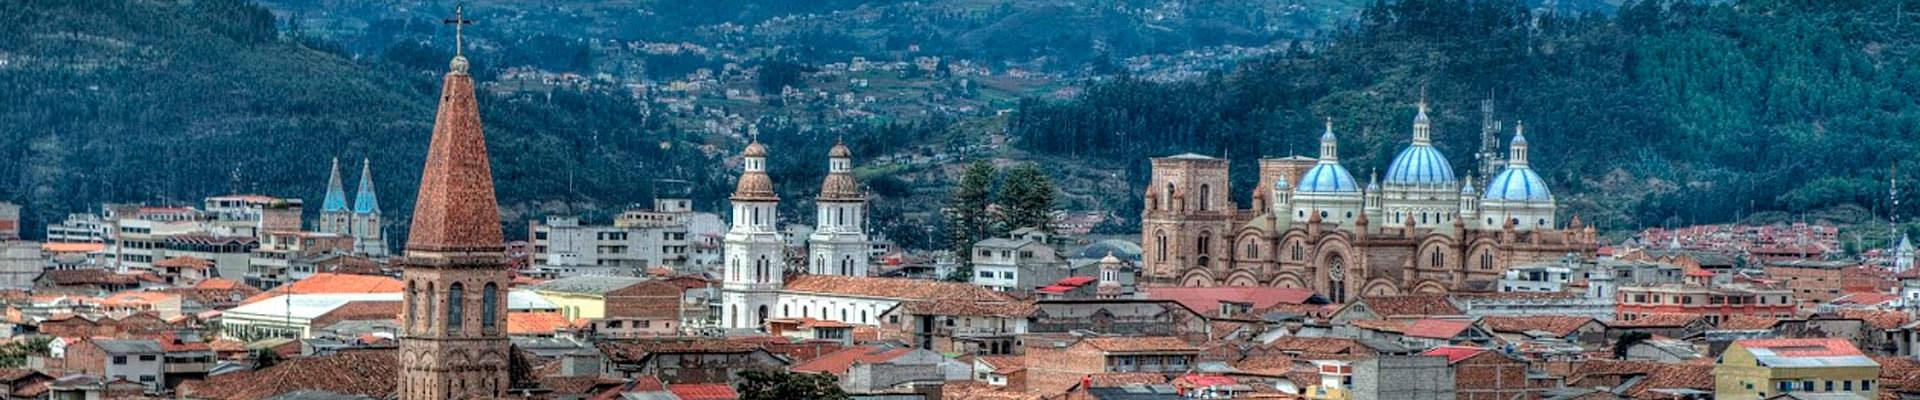 Cuenca Tours: Que hacer en Cuenca